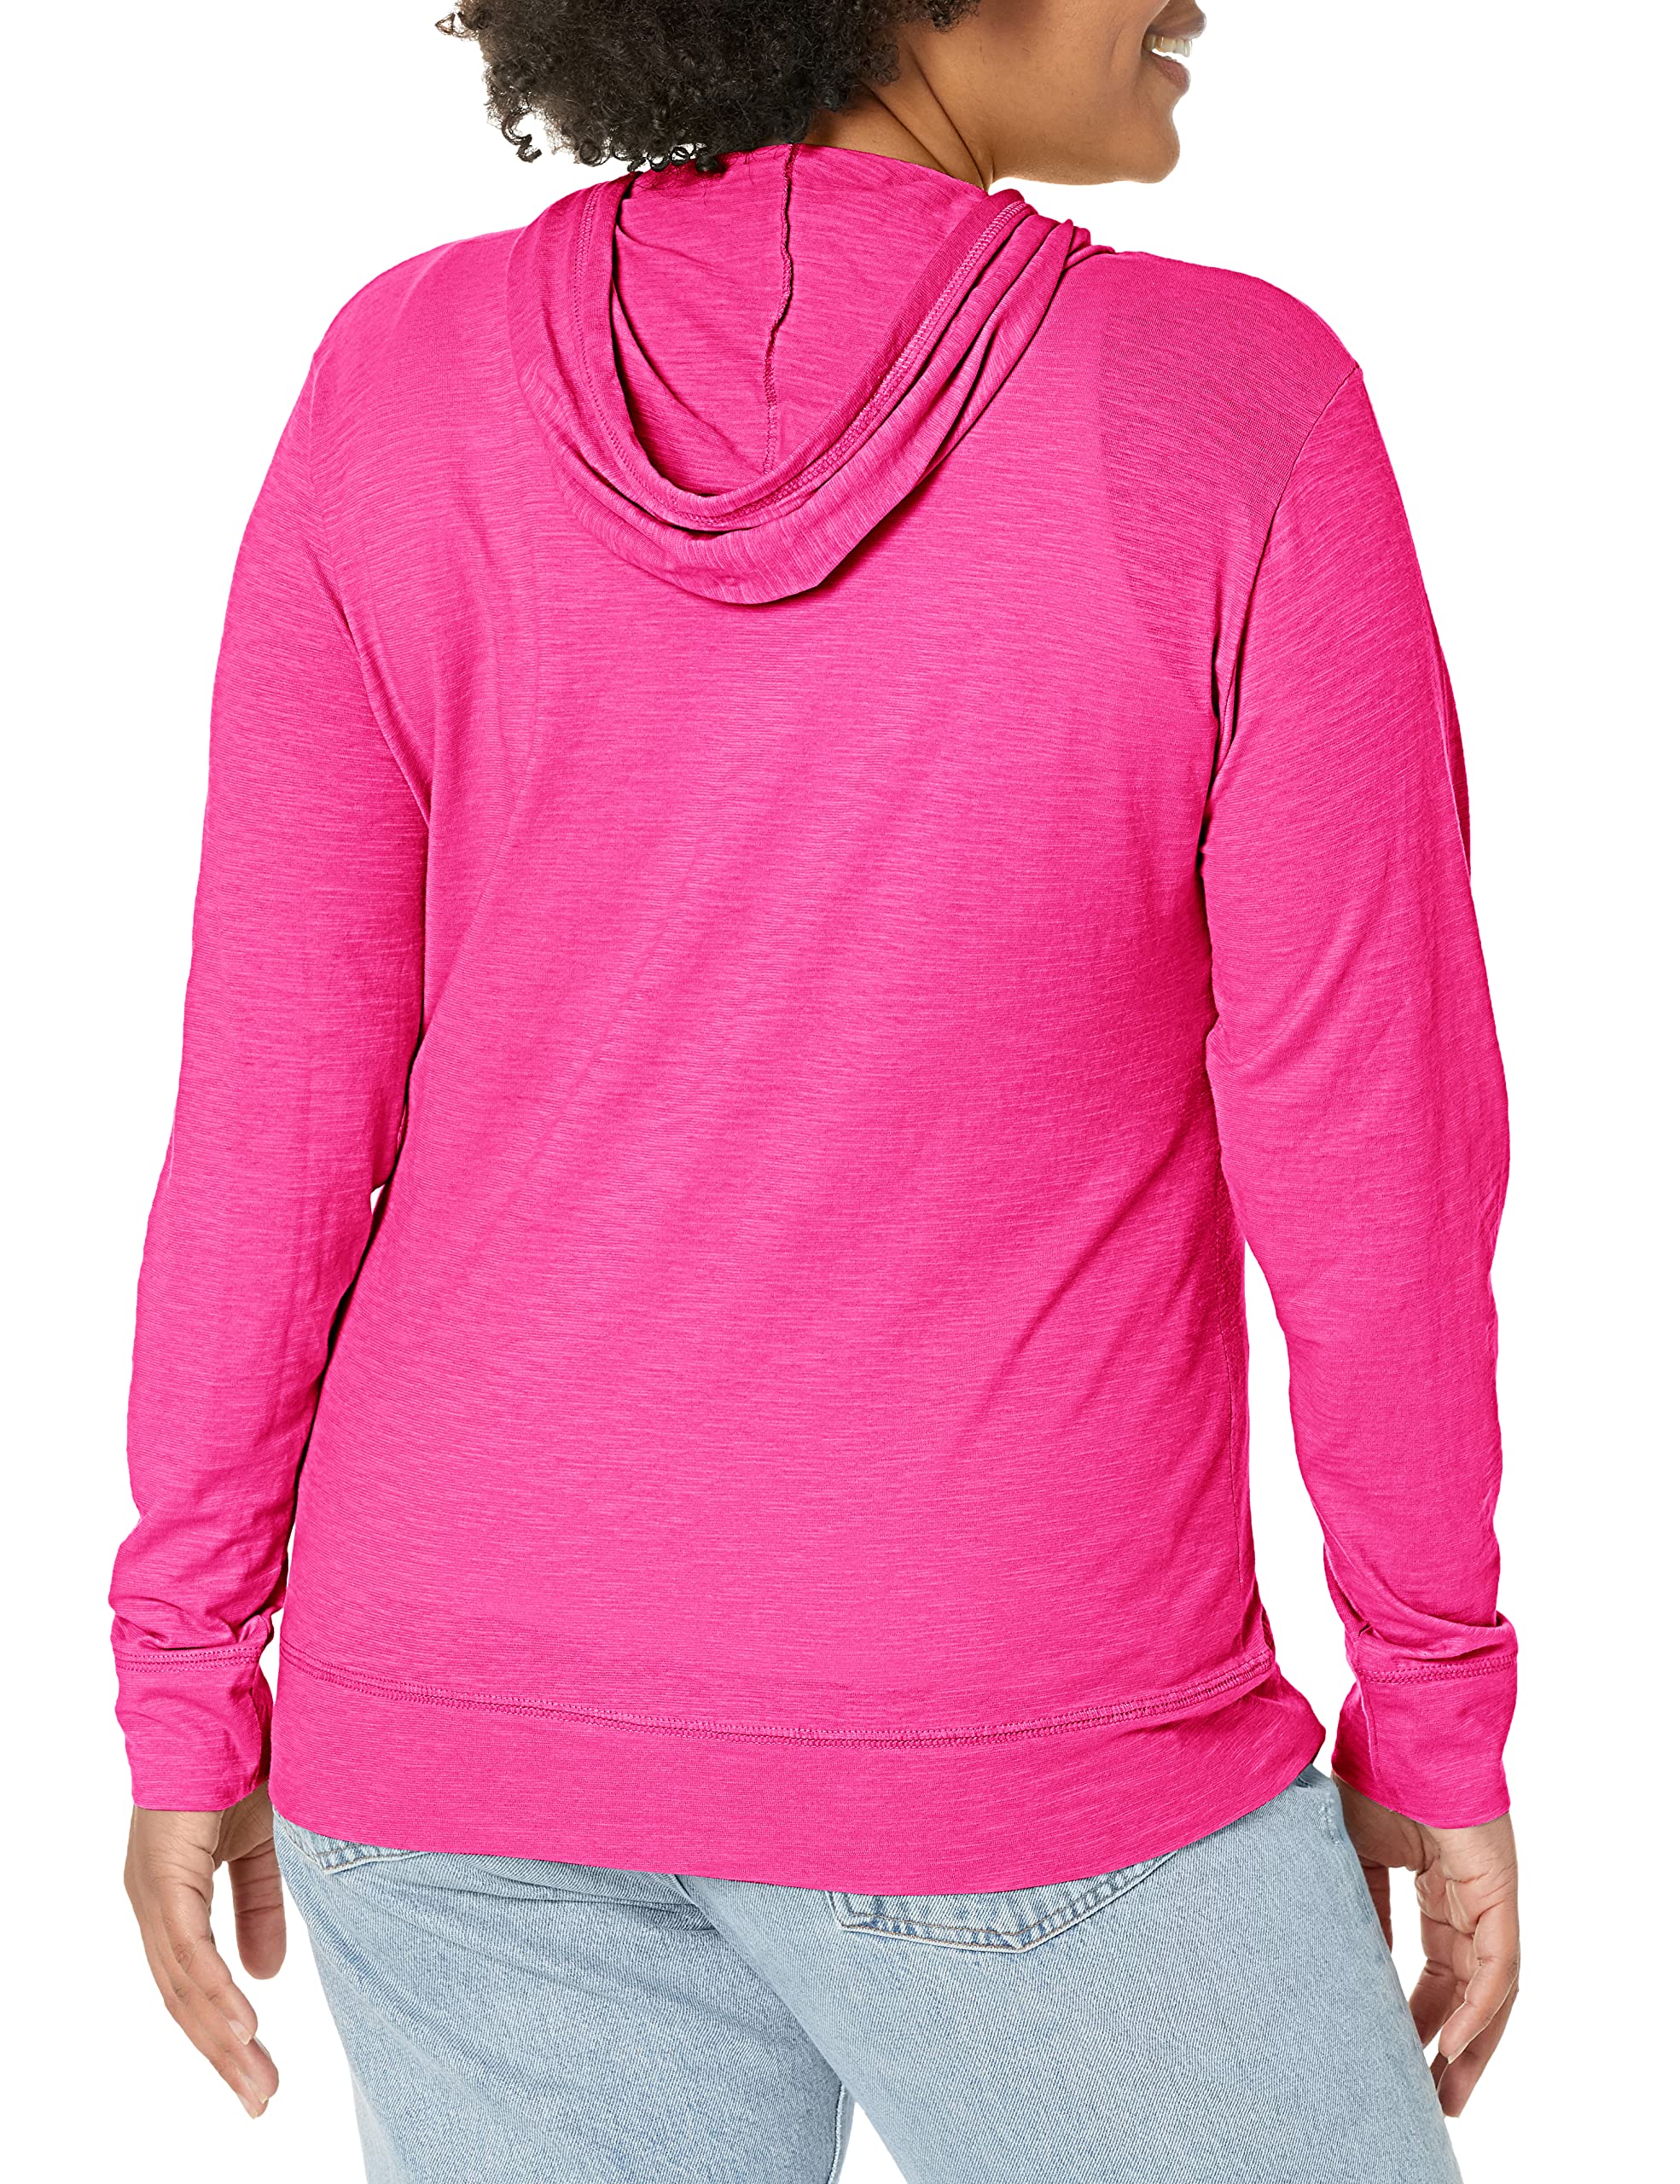 Hanes Women's Full Zip Slub Cotton Jersey Hoodie